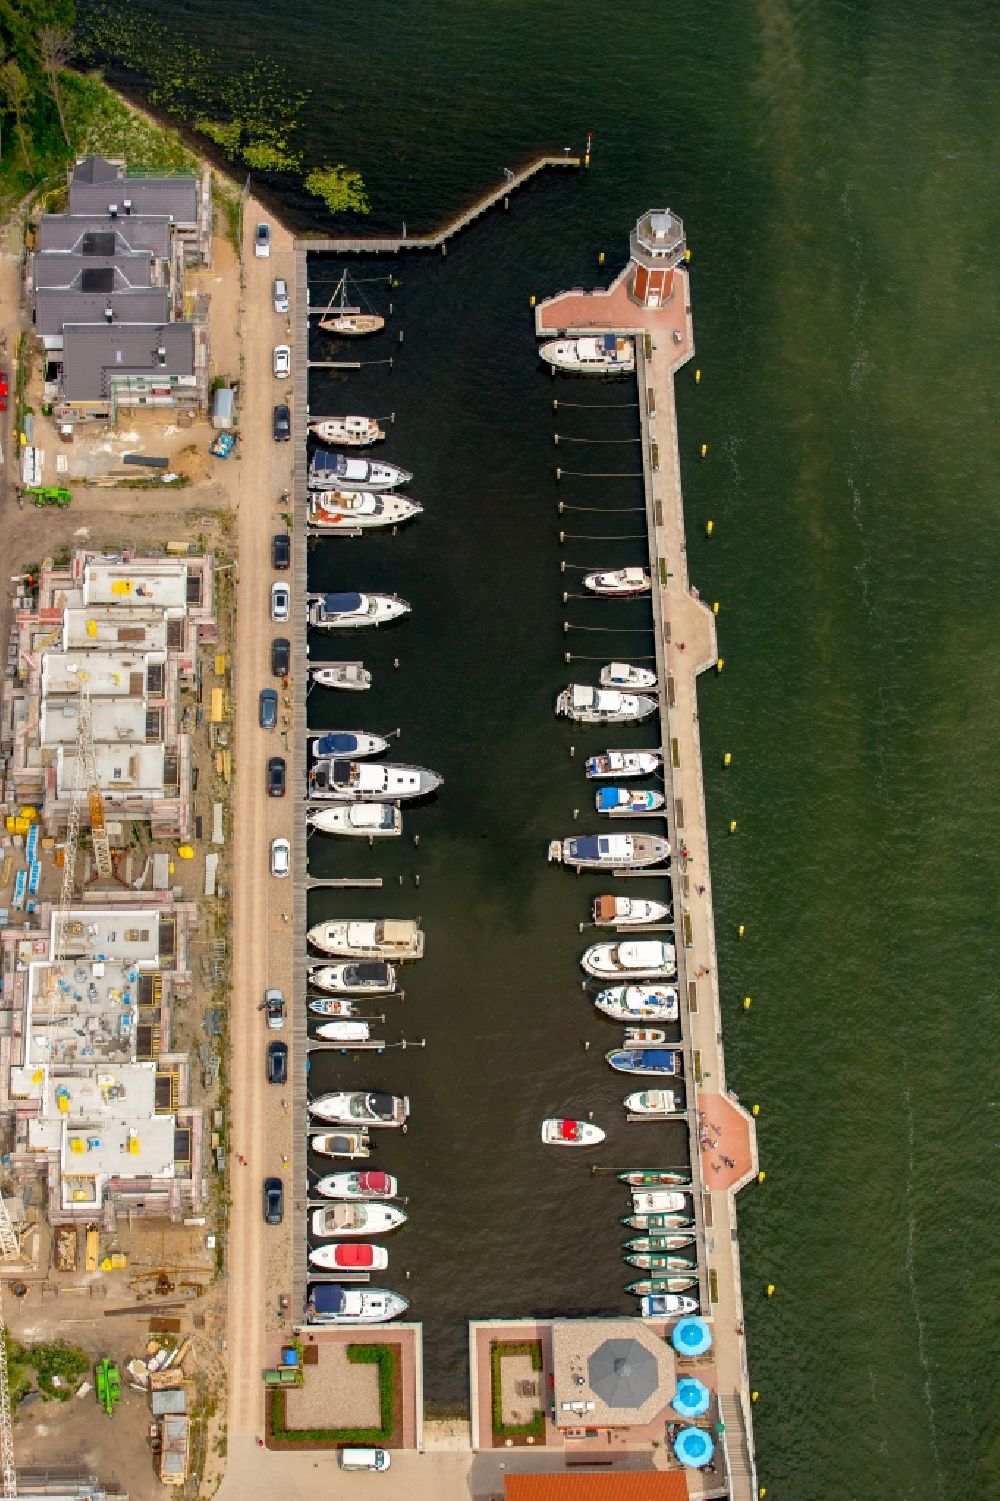 Plau am See aus der Vogelperspektive: Yachthafen mit Sportboot- Anlegestellen und Bootsliegeplätzen am Uferbereich des Plauer Sees in Plau am See im Bundesland Mecklenburg-Vorpommern